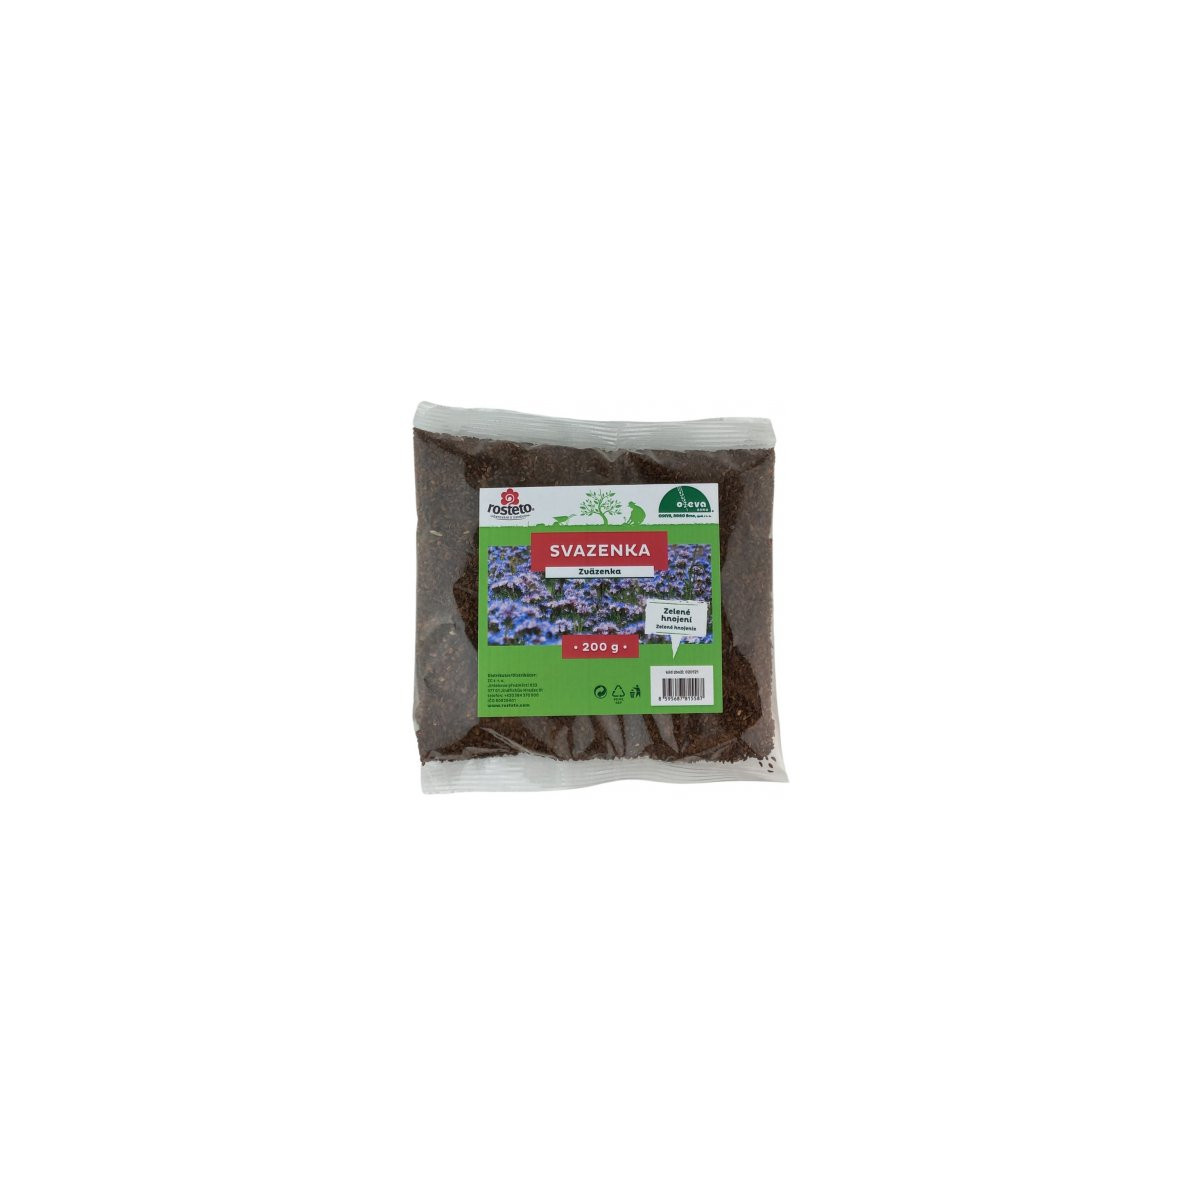 Svazenka vratičolistá - Forestina - osivo pro zelené hnojení - 200 g